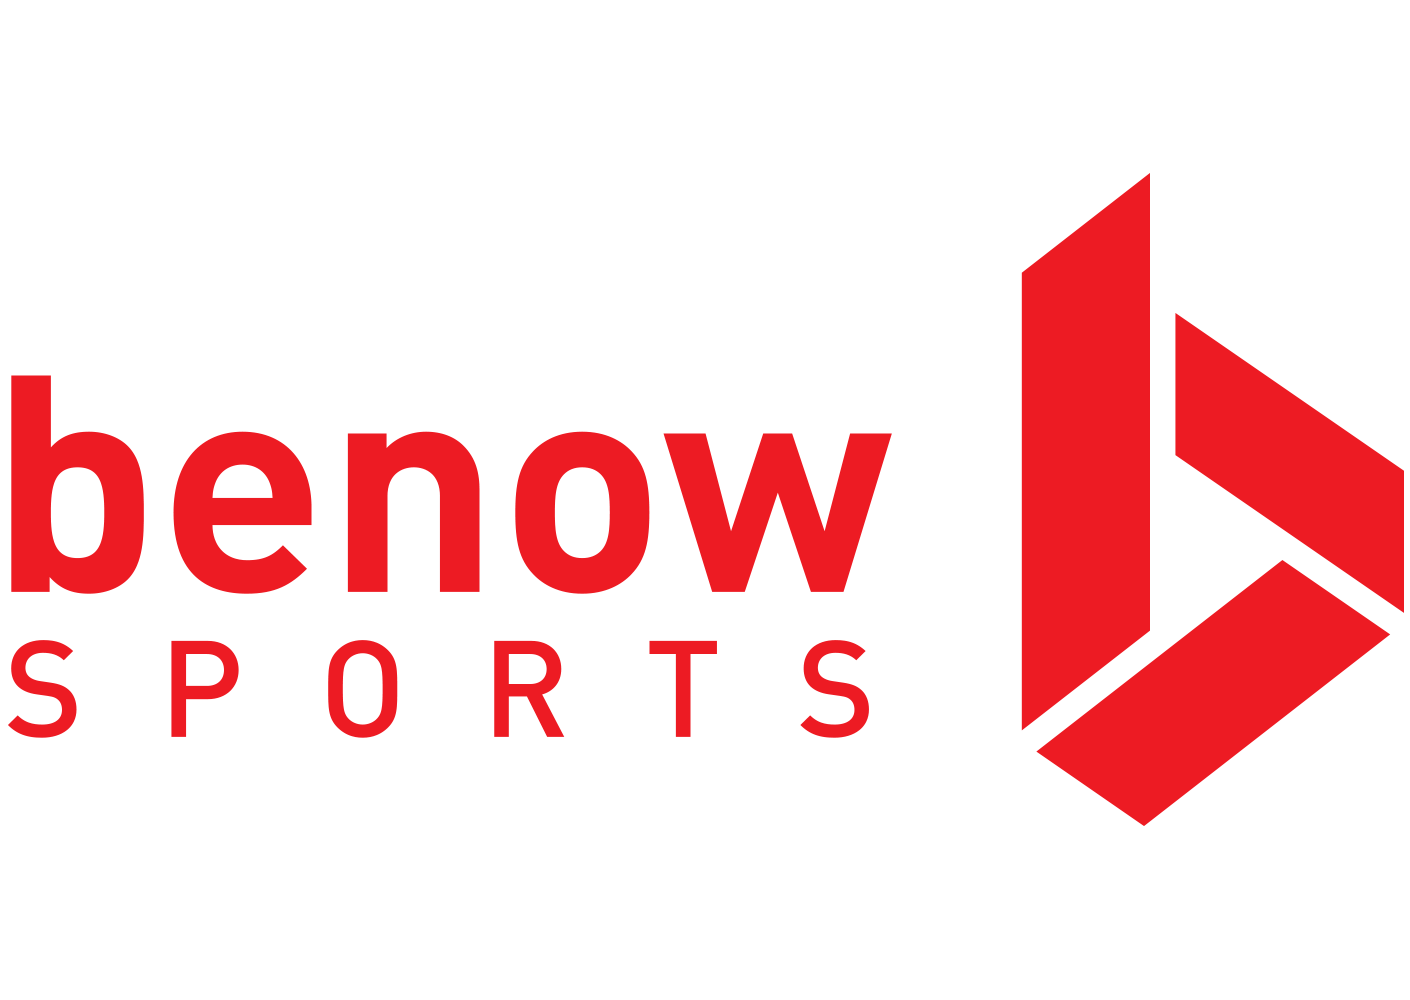 benowfloor.com